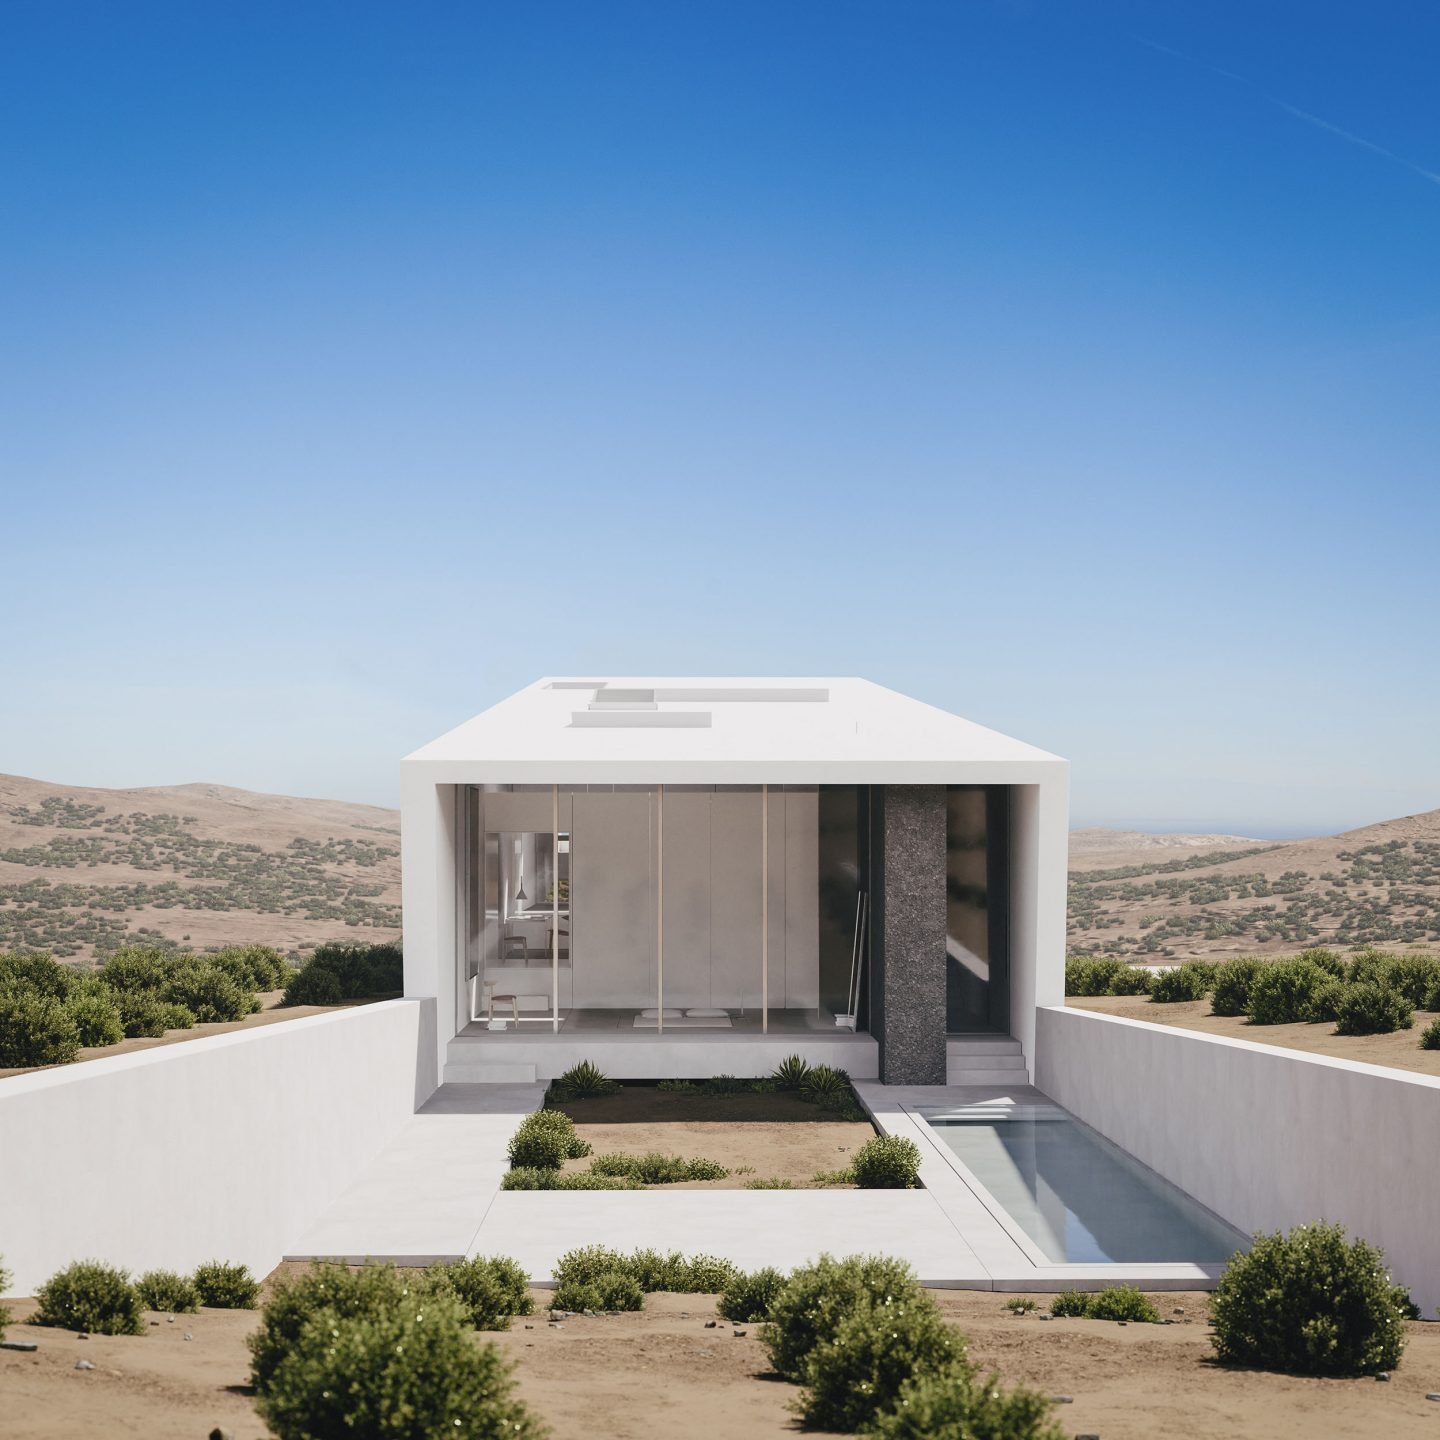 Casa de arquitectura moderna en grecia de color blanco patio interior